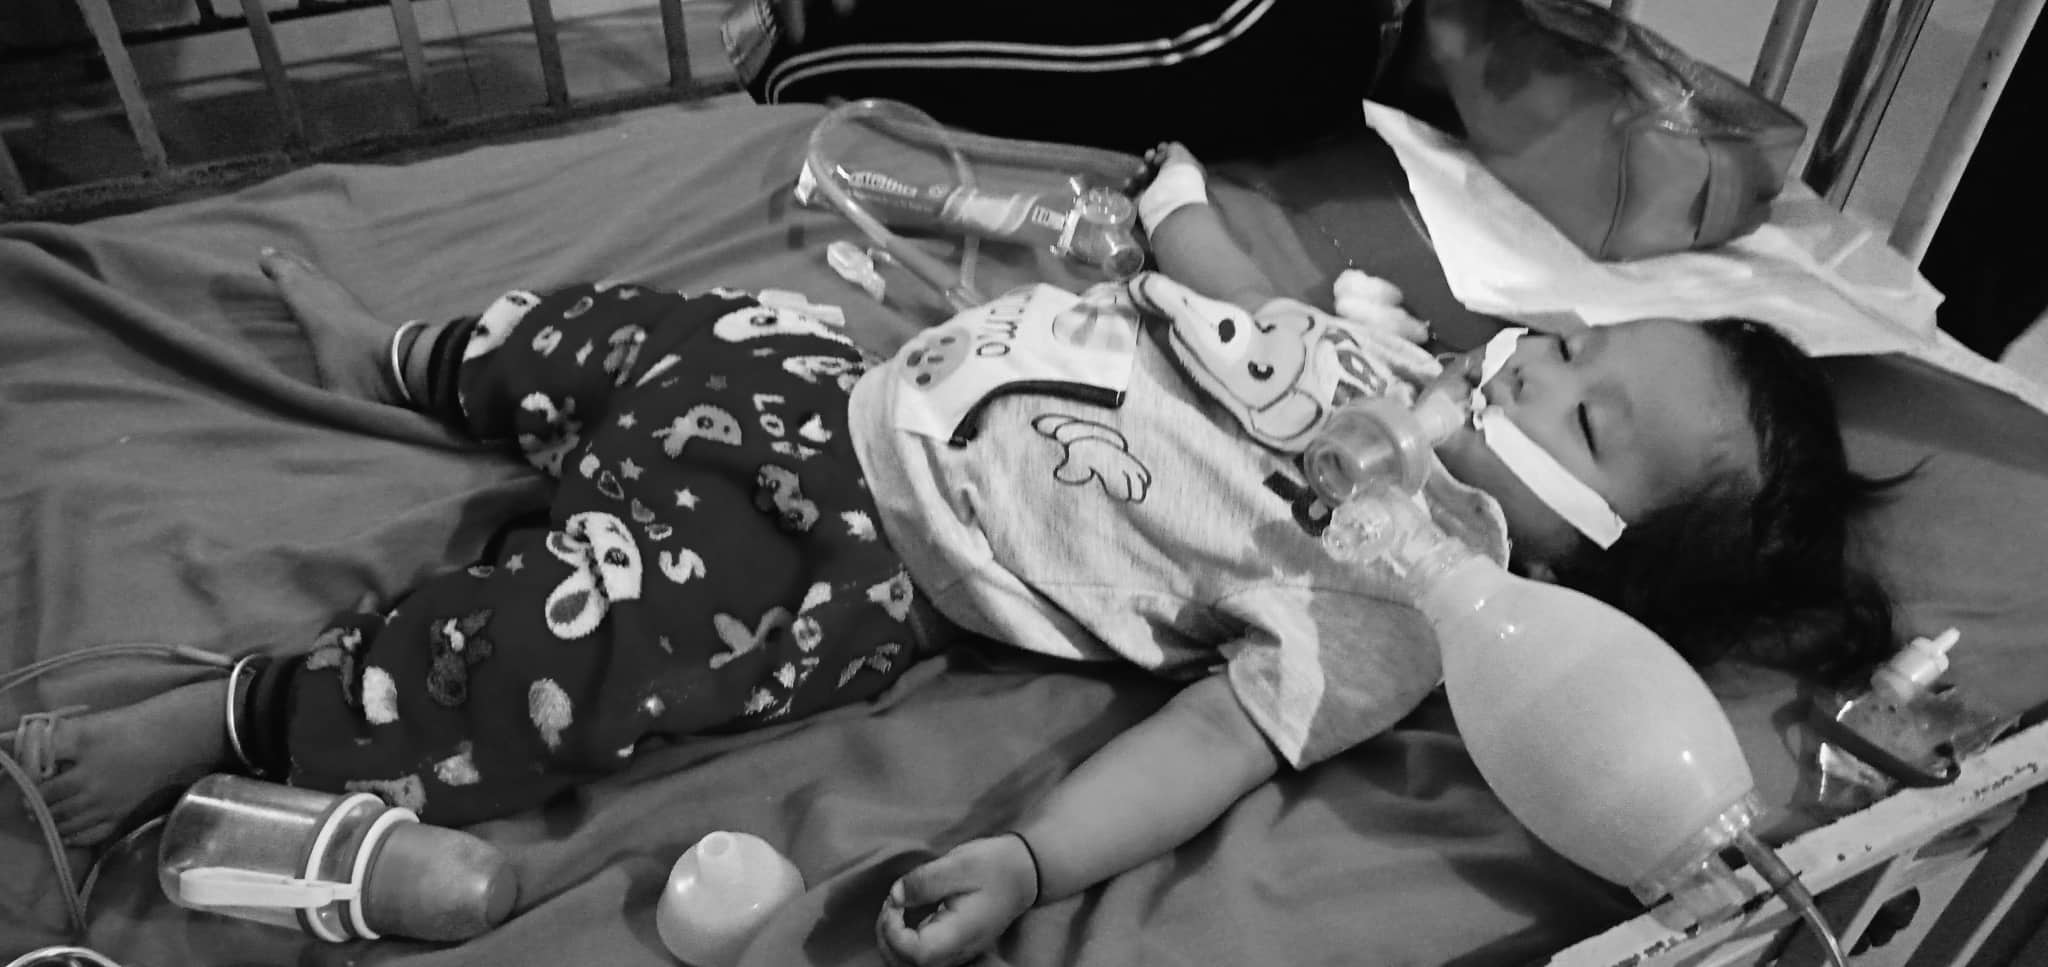 अस्पतालमा बालकको मृत्यु प्रकरणः आफन्तले शव बुझ्न मानेनन्, अस्पतालको आफ्नै दाबी